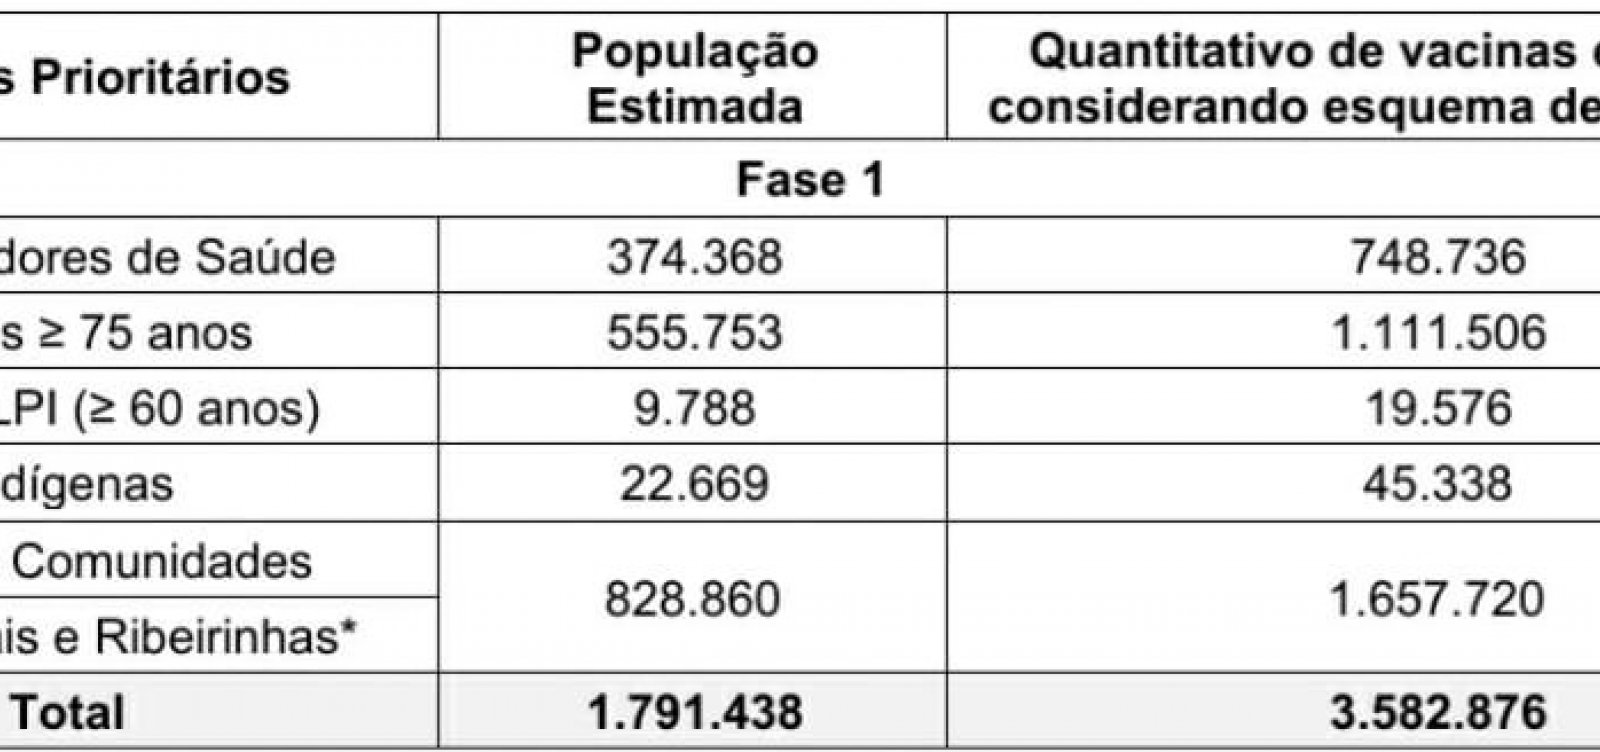 Covid-19: Governo da Bahia divulga plano de imunização com quatro etapas 